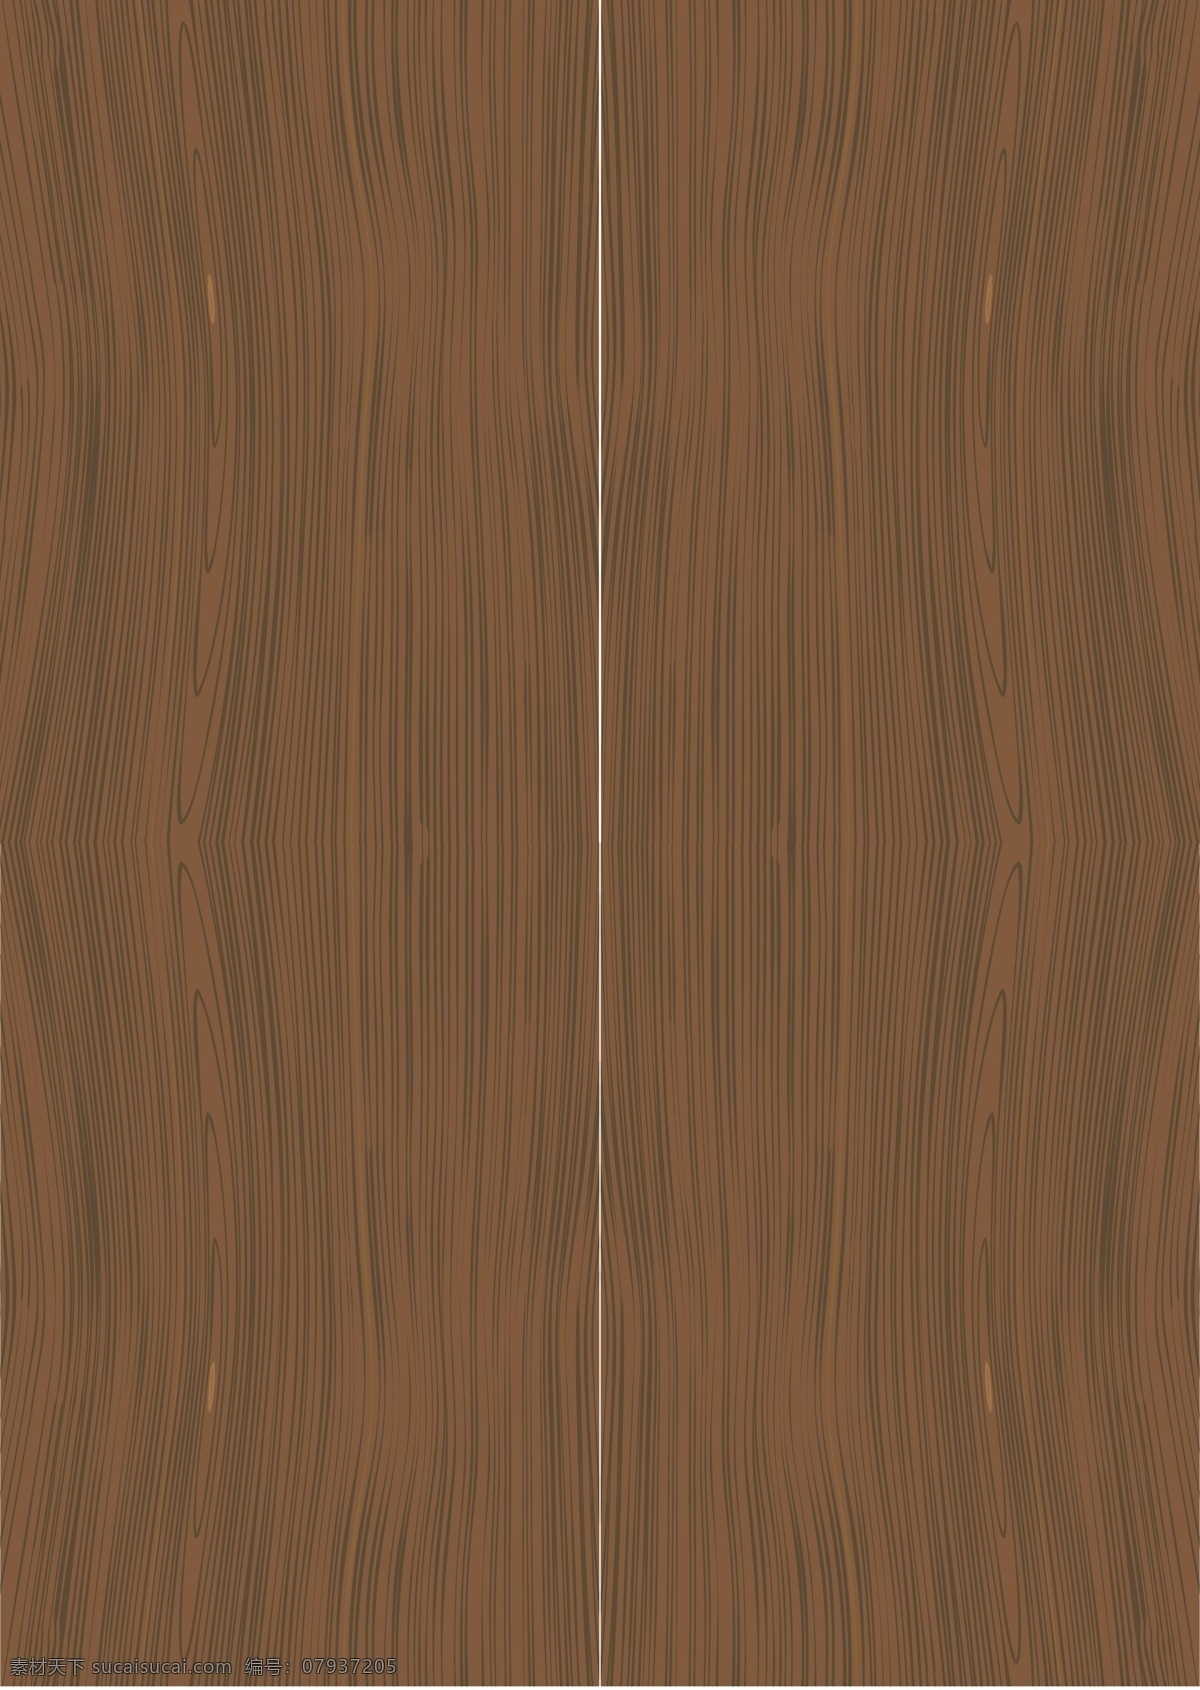 木头纹理 实木背景 门图片 木头 纹理 门纹理 森林木头